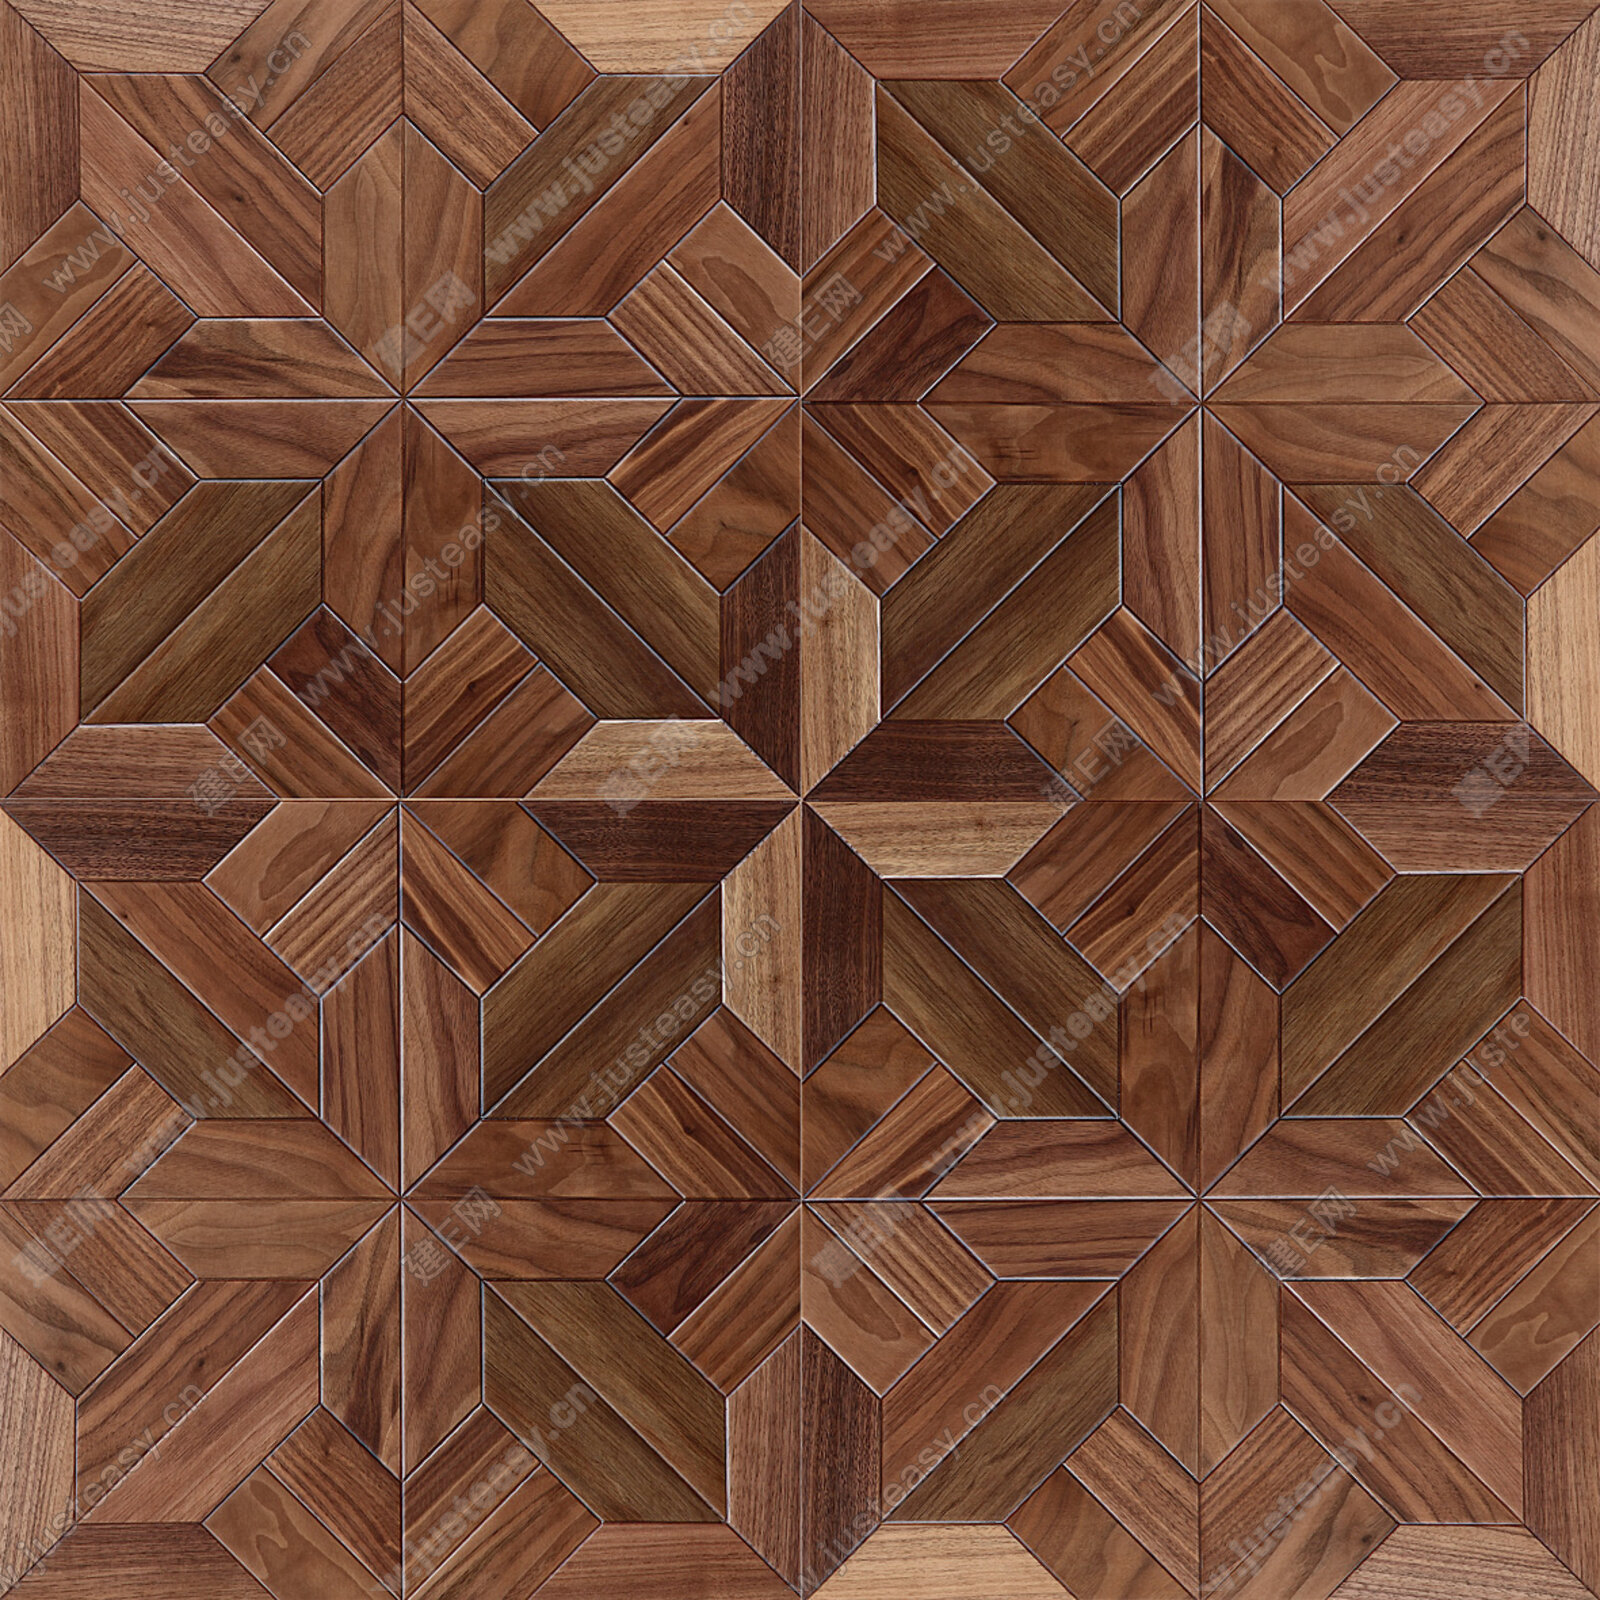 圣象地板产品介绍 好看且百搭系木地板效果图-地板网